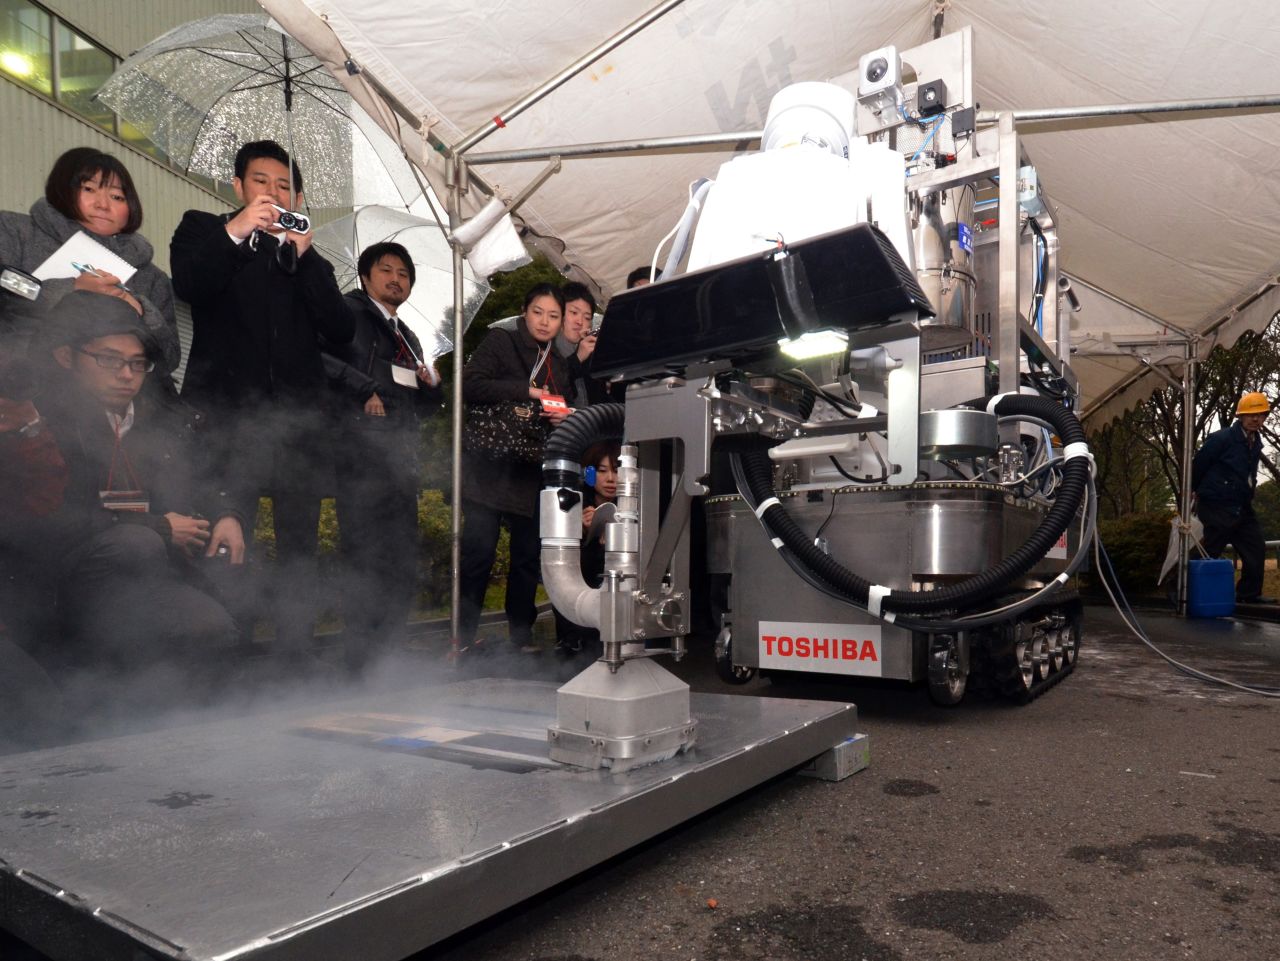 Este robot Toshiba de descontaminación suelta partículas de hielo seco sobre pisos o paredes contaminadas, y puede ser usado para limpiar eficazmente derrames químicos en plantas nucleares. 